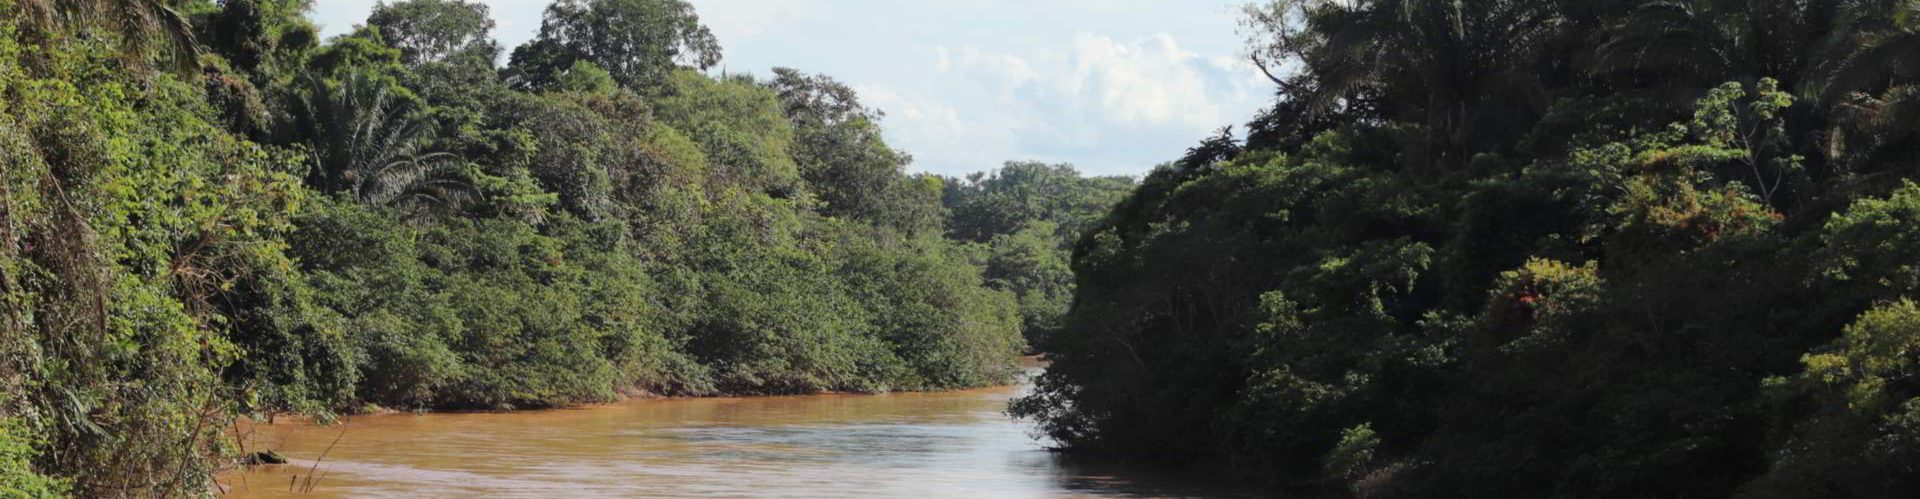 tree-lined river at Hato la Aurora, Colombia